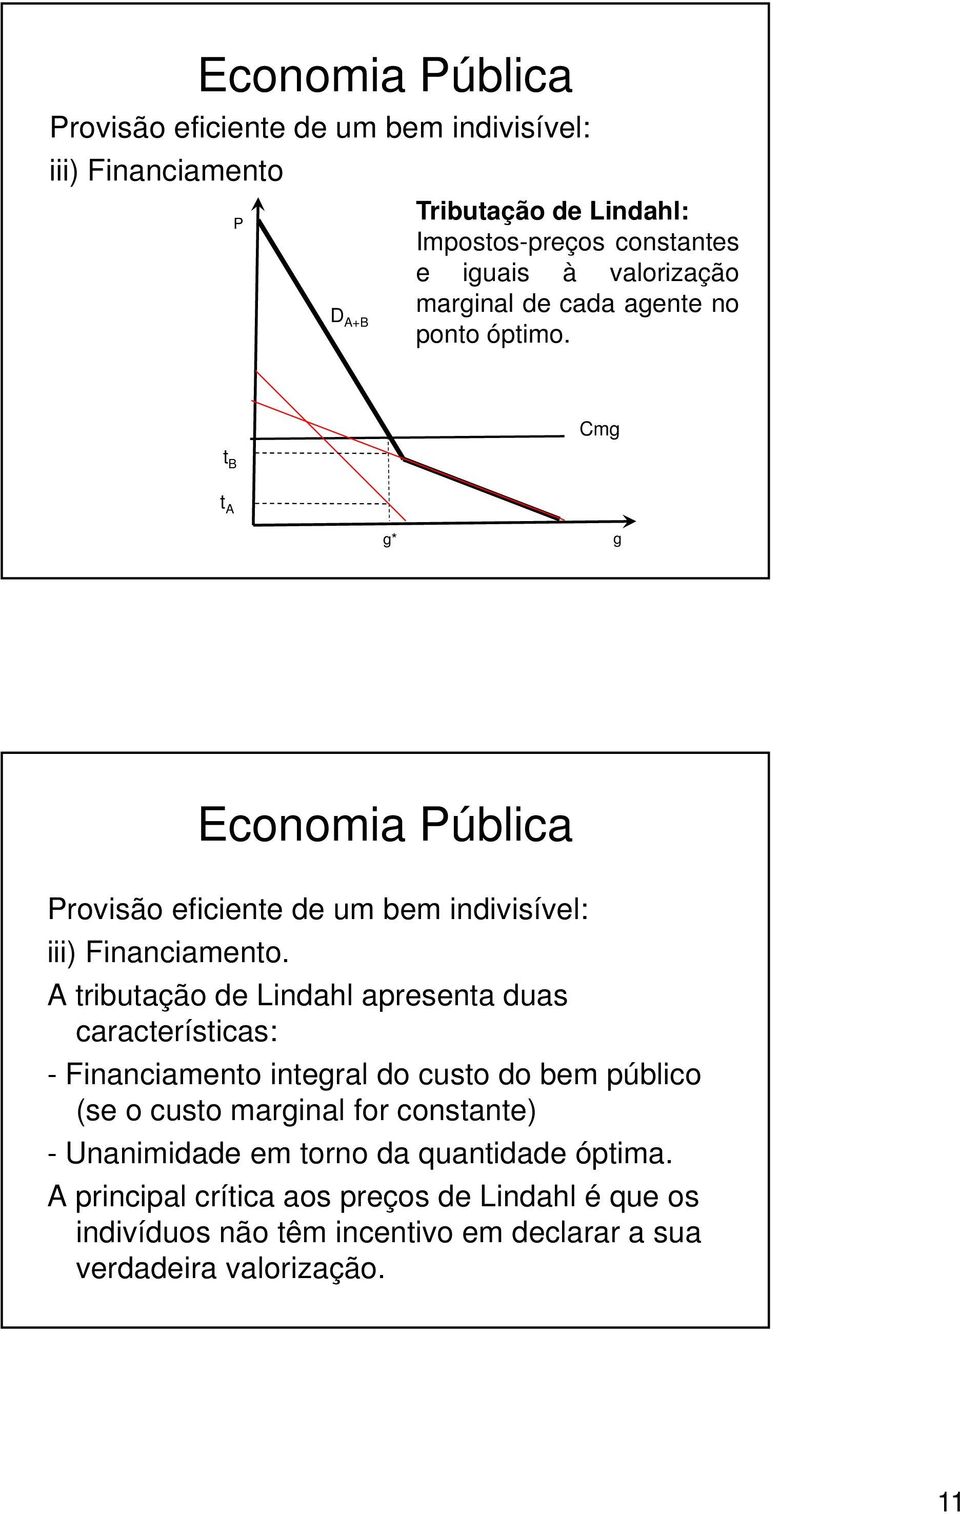 i A tributação de Lindahl apresenta duas características: - Financiamento interal do custo do bem público (se o custo marinal for